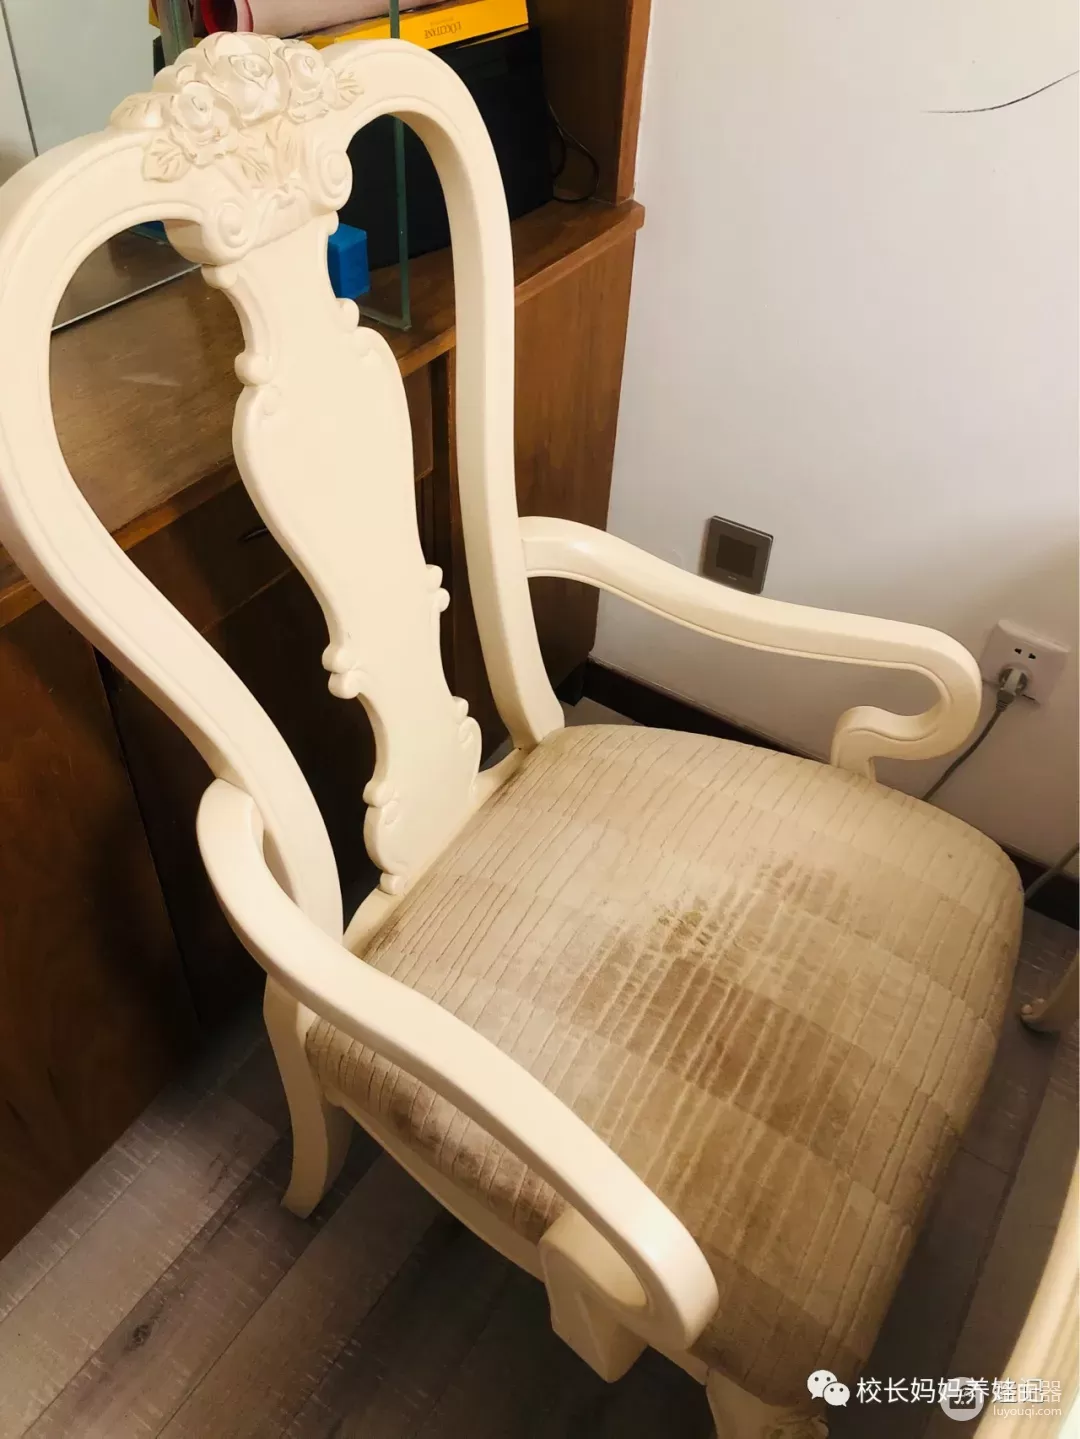 我决定把家里的椅子都换了(我决定把家里的椅子都换了英文)